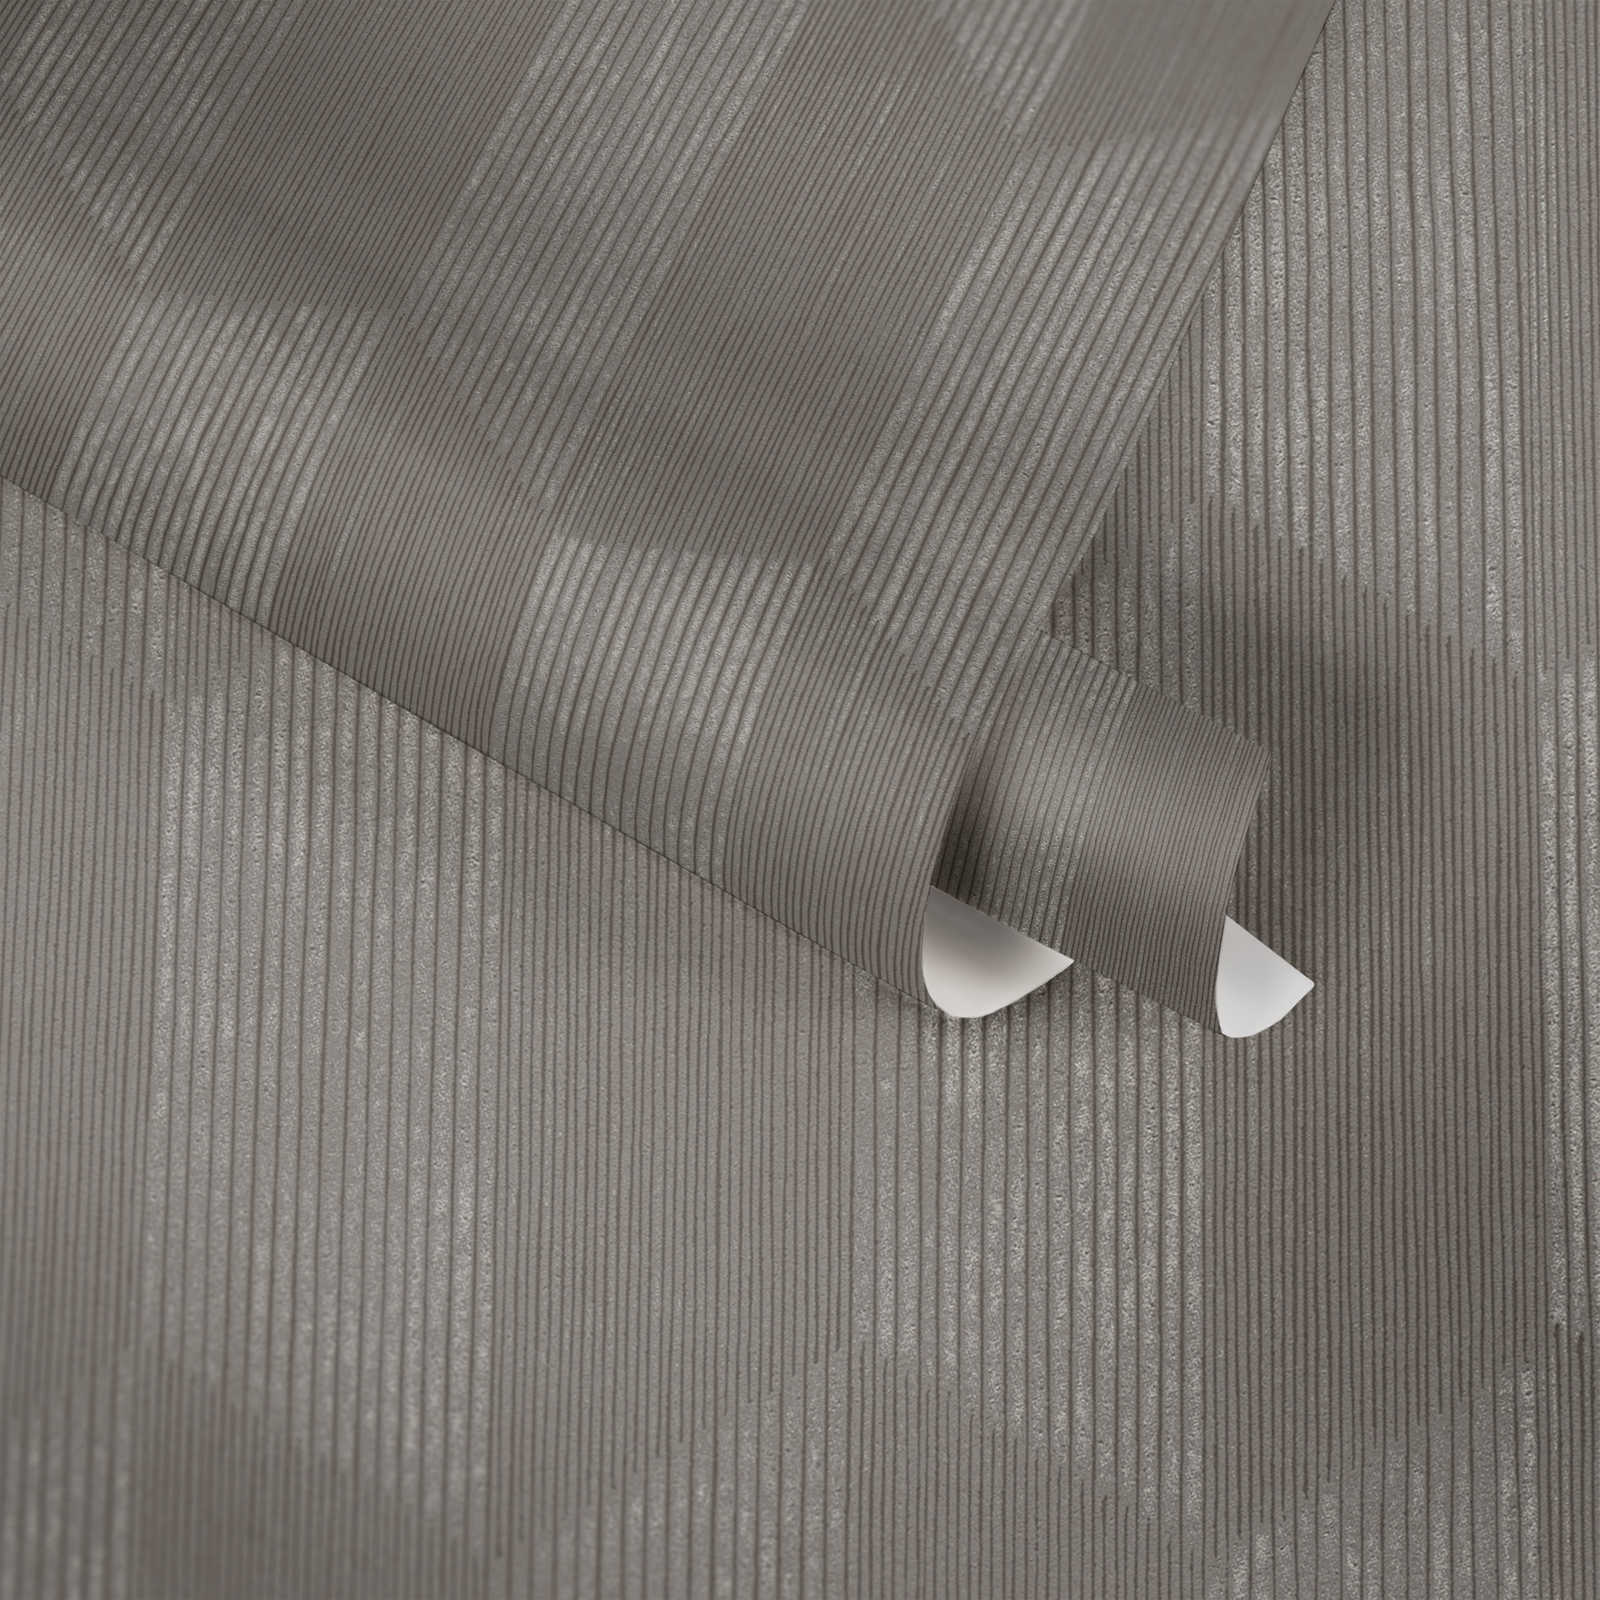             Papier peint structuré avec motif graphique 3D - gris, beige
        